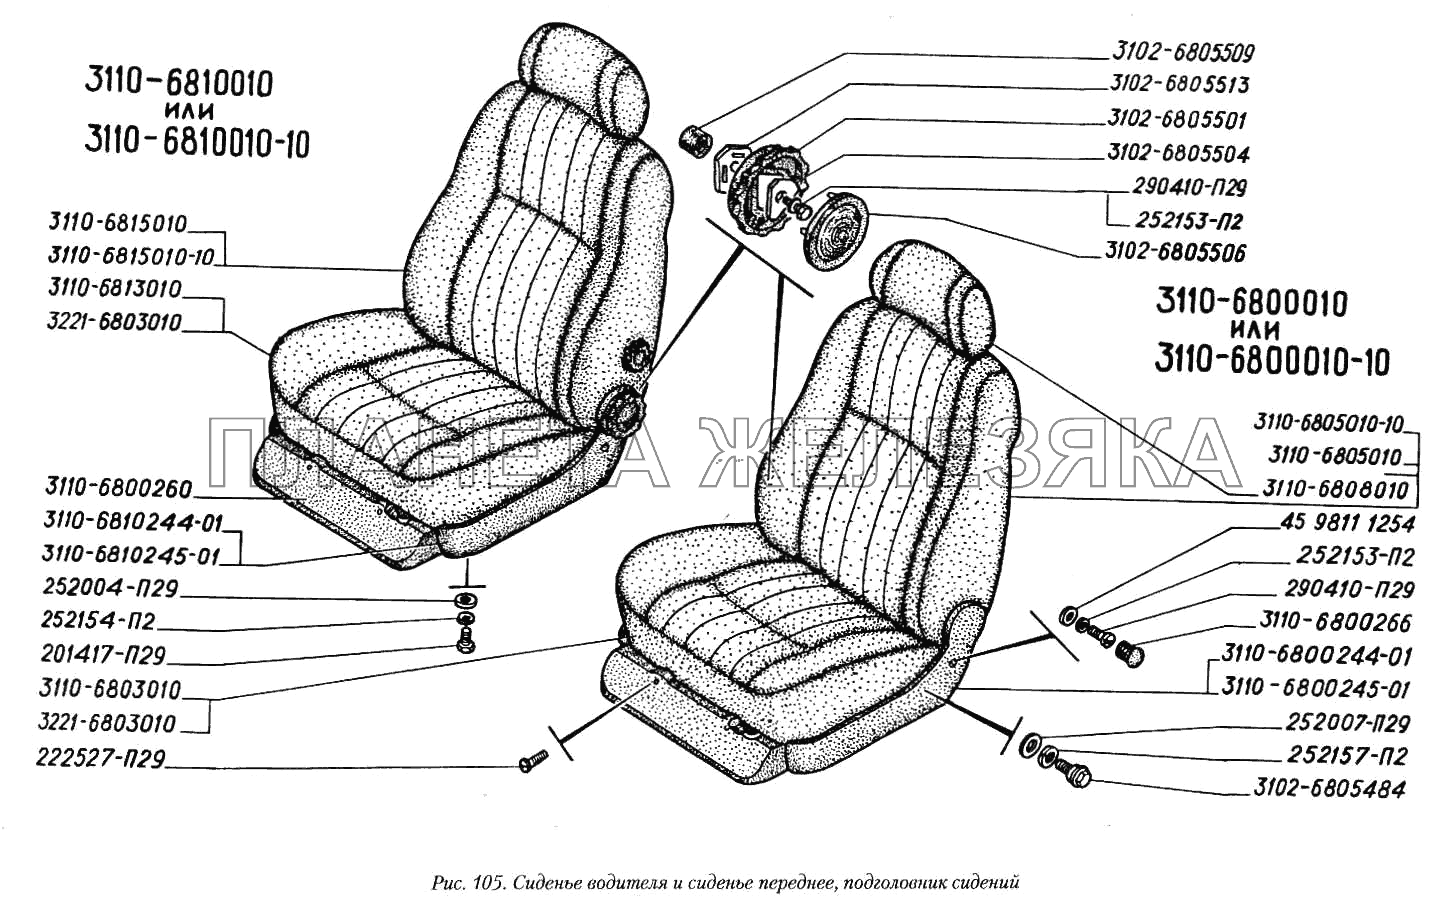 Сиденье водителя и сиденье переднее, подголовник сидений ГАЗ-3110